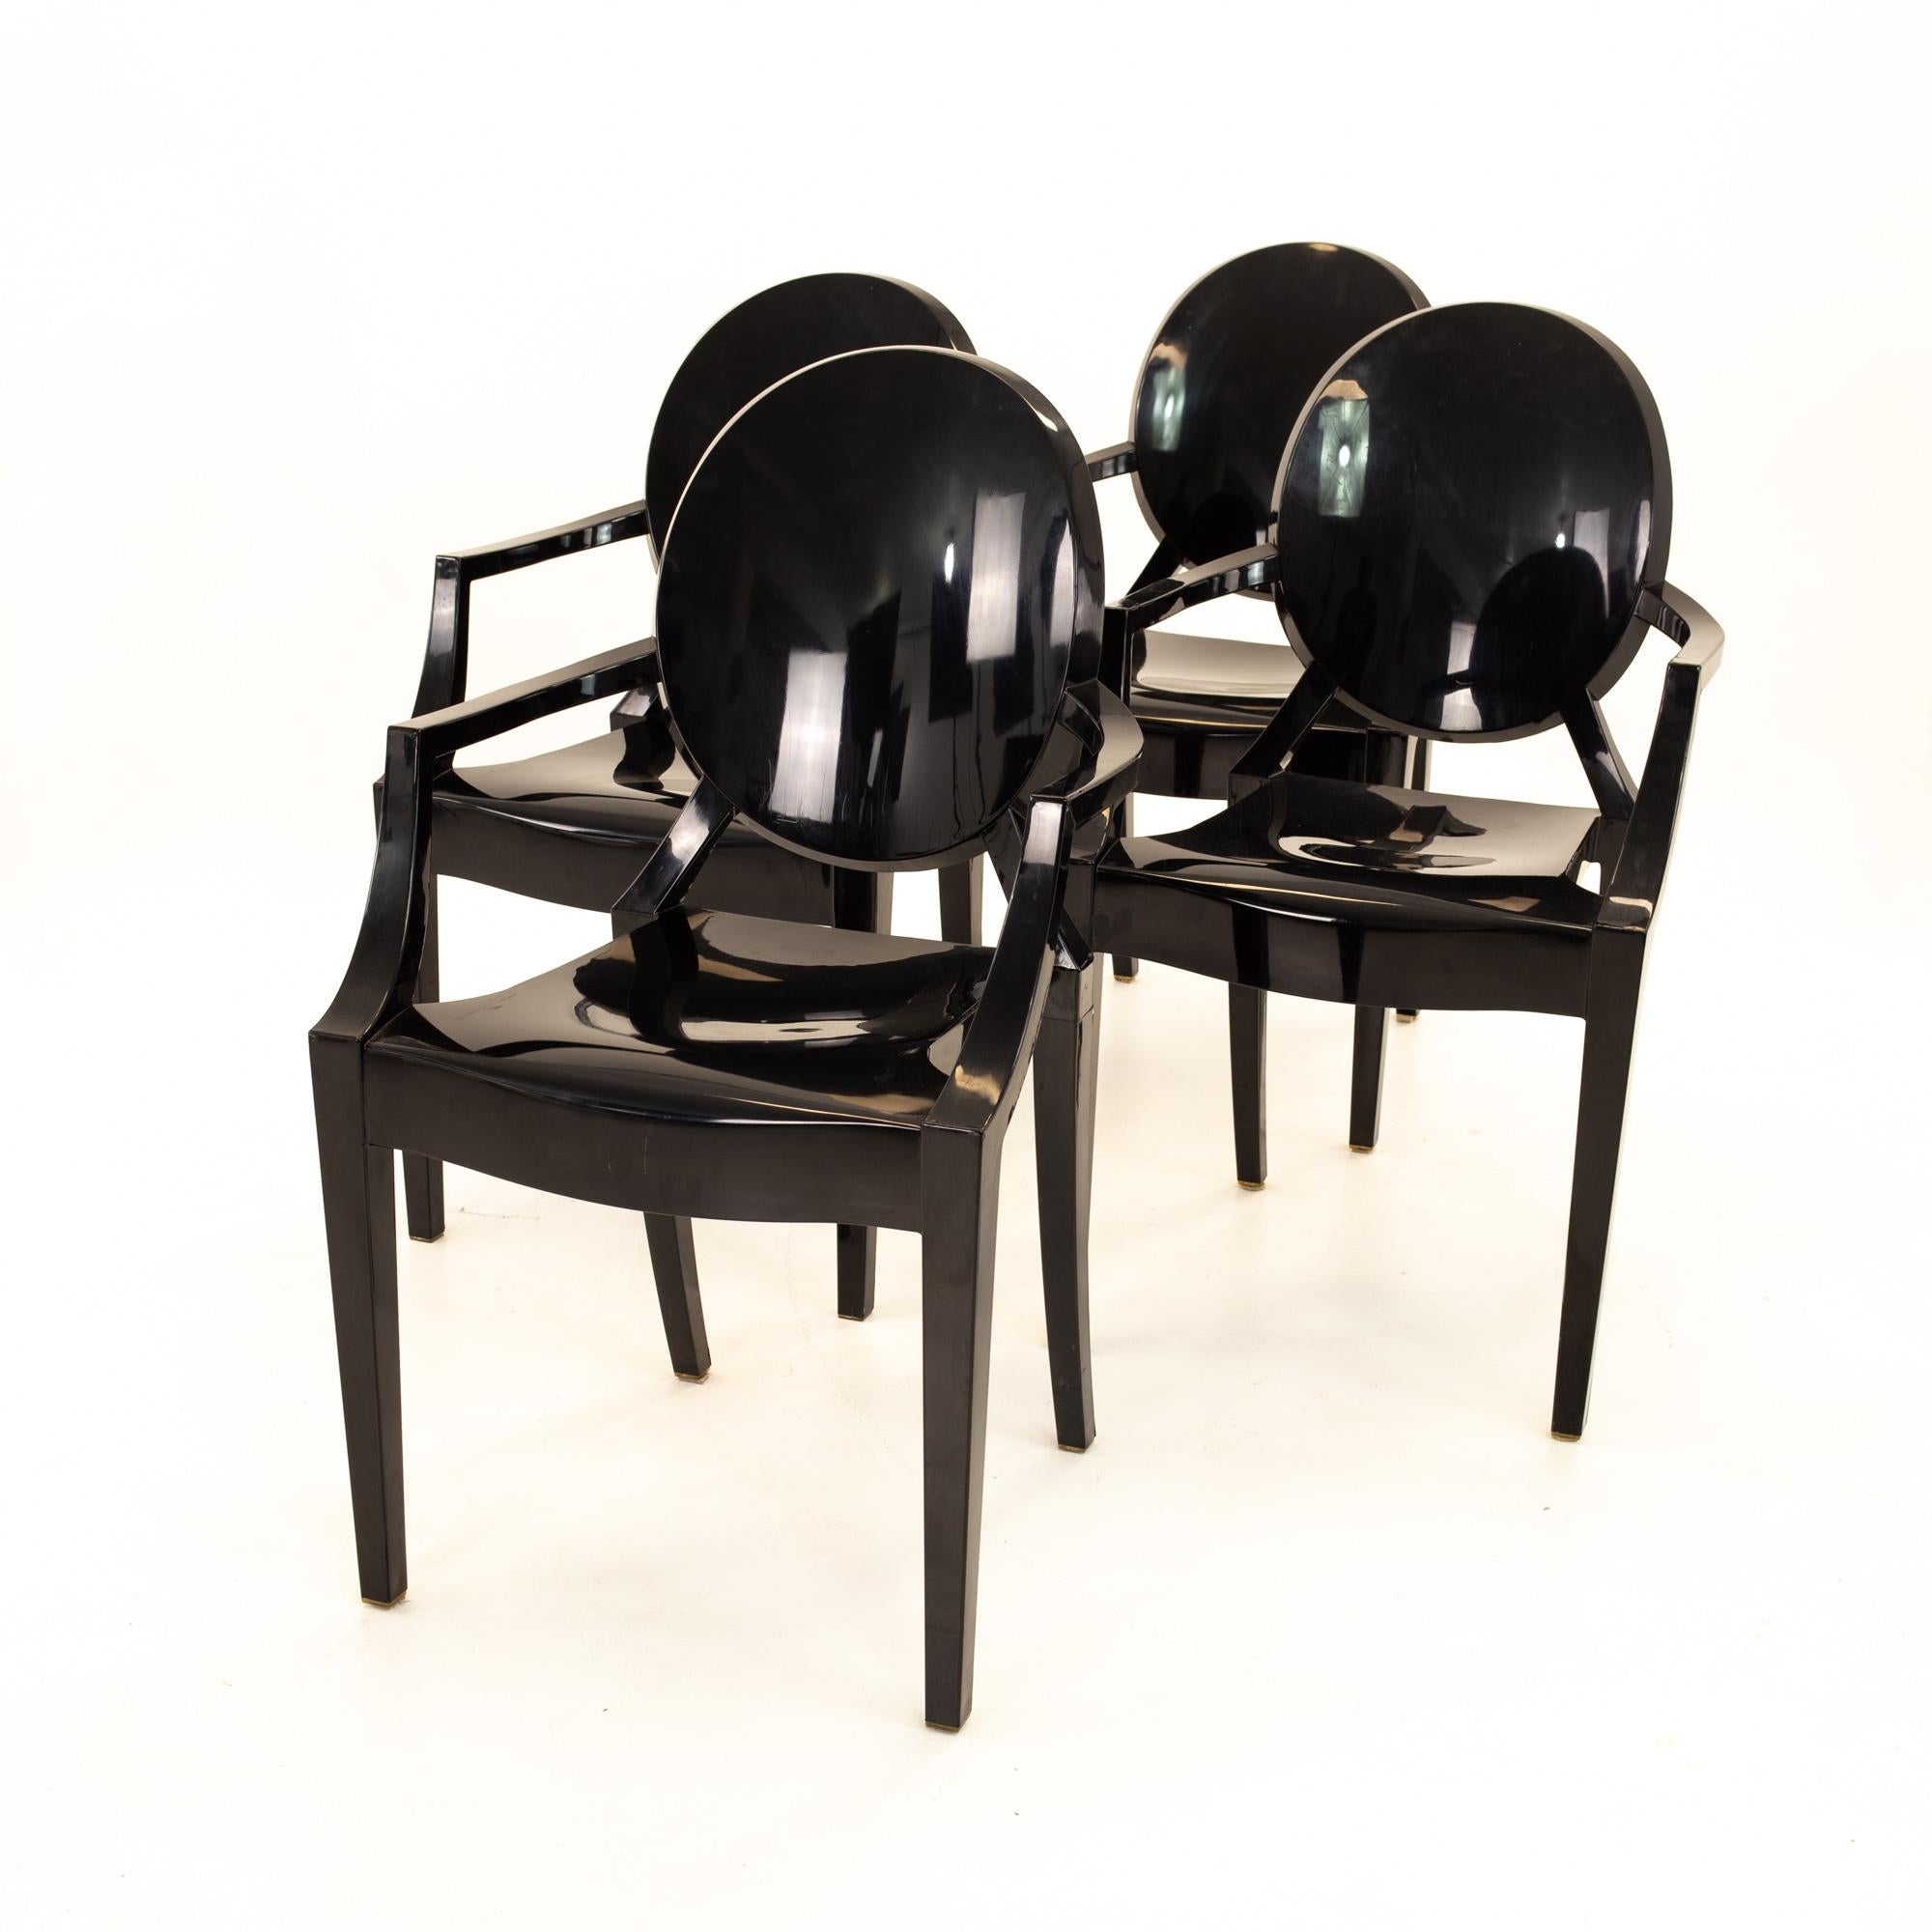 Meubles House GH-Clr Mid-Century Modern Phillip Style Ghost Dining Chair-Armless Clear